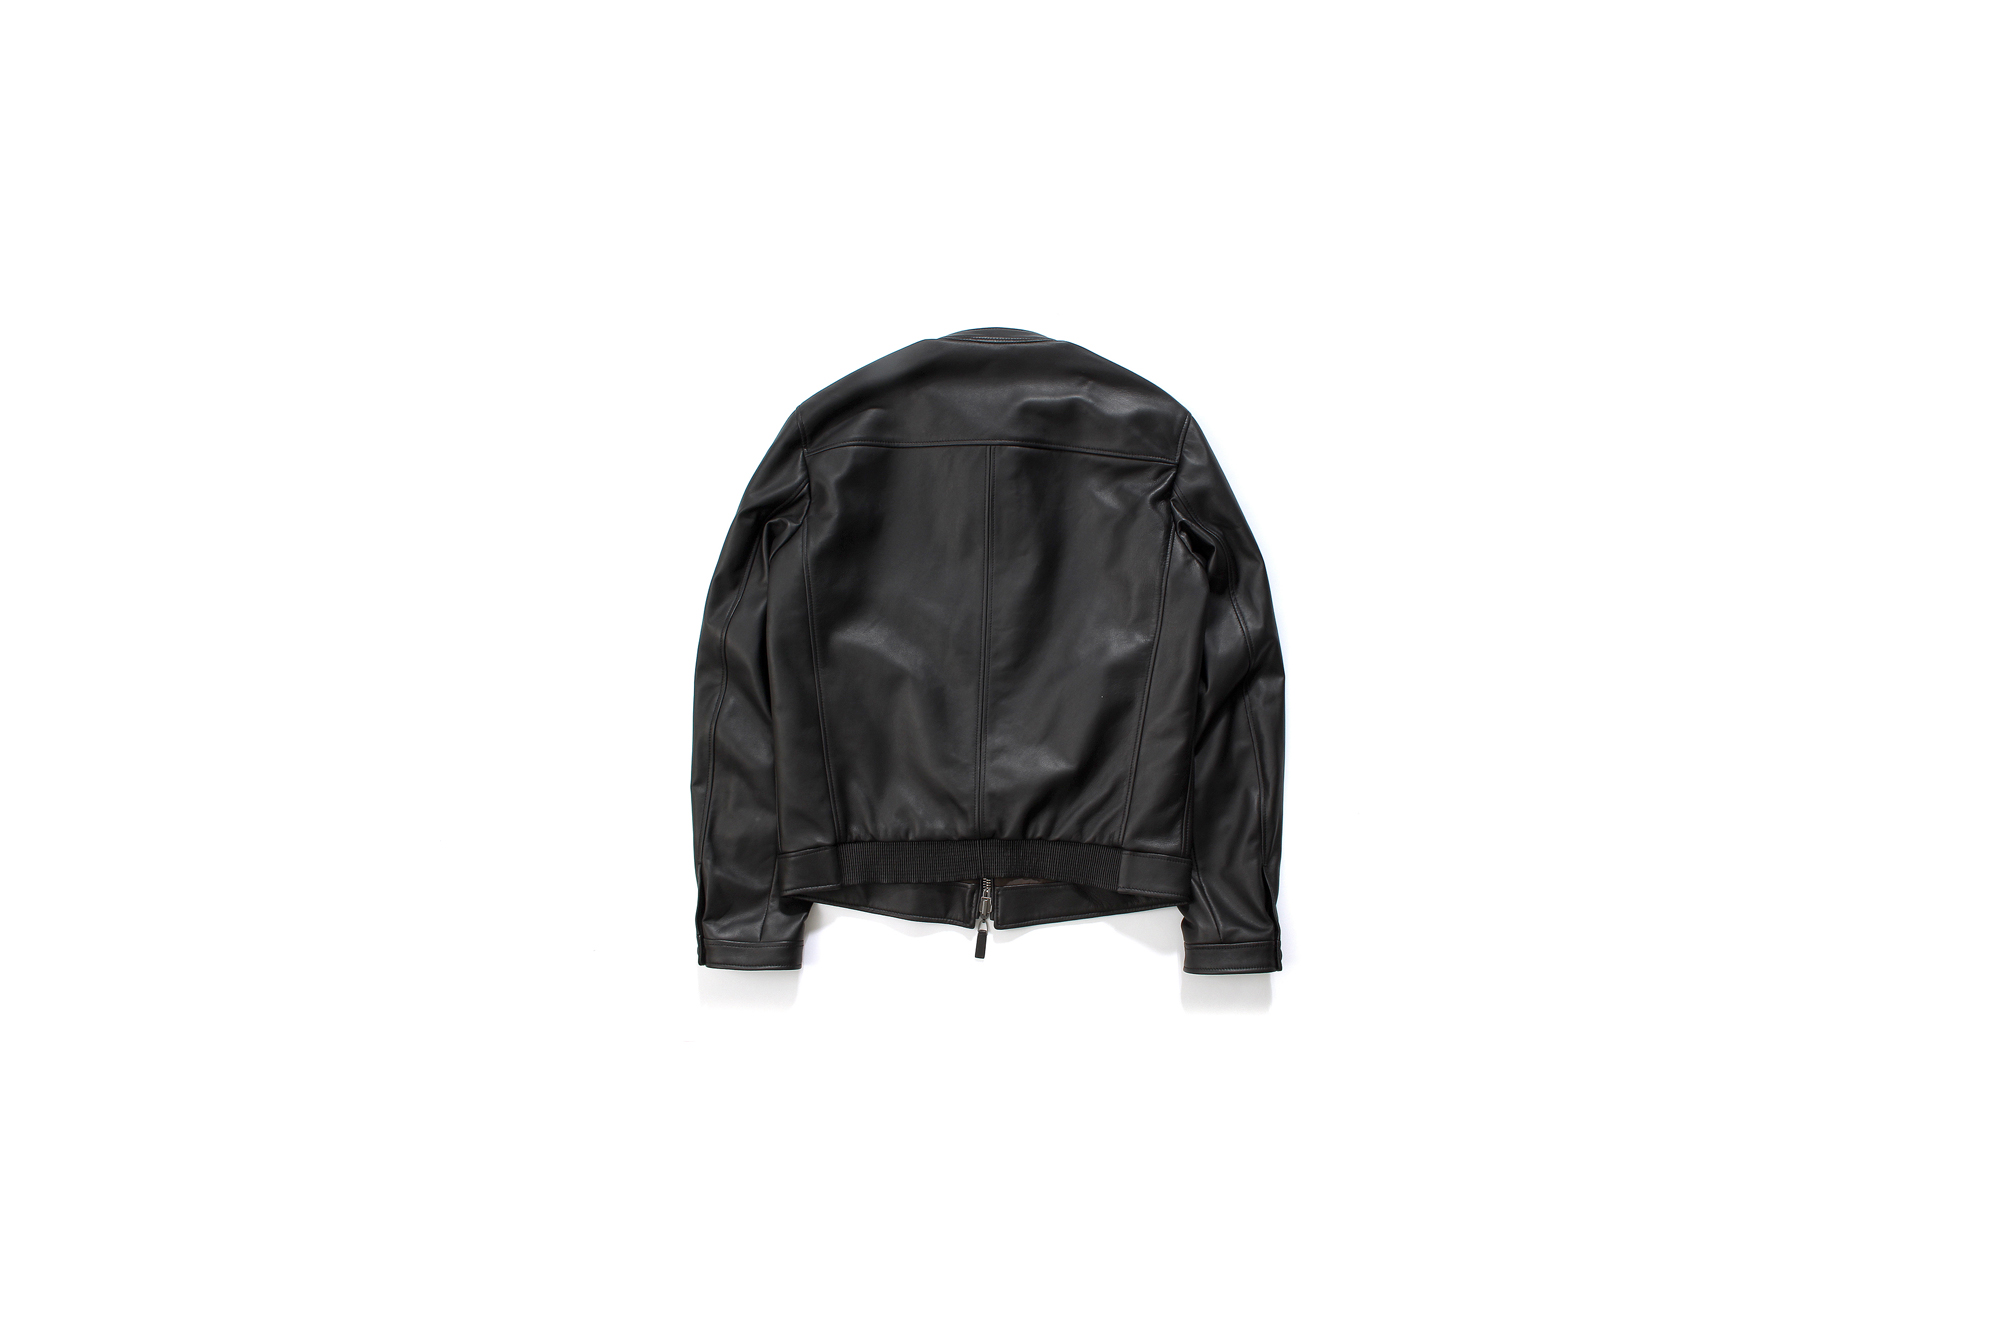 ALTACRUNA (アルタクルーナ) Reversible Leather Jacket (リバーシブル レザー ジャケット) Lamb Leather (ラムレザー) レザー × ナイロン リバーシブル シングルライダースジャケット NERO (ブラック・0010) Made in italy (イタリア製) 2021 春夏 愛知 名古屋 Alto e Diritto altoediritto アルトエデリット